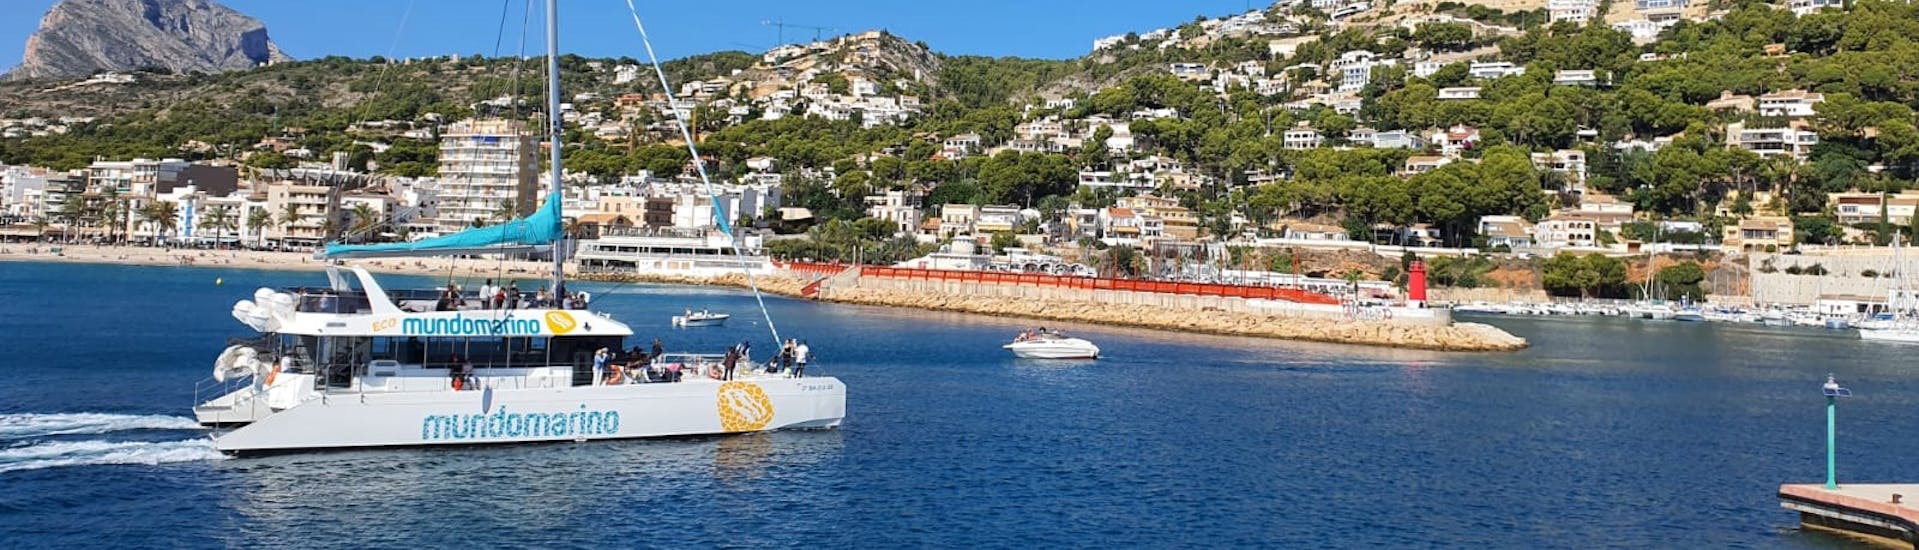 Een van de catamarans van Mundo Marino Valencia vaart langs de kust tijdens een catamaranfeest met DJ en welkomstglas cava.